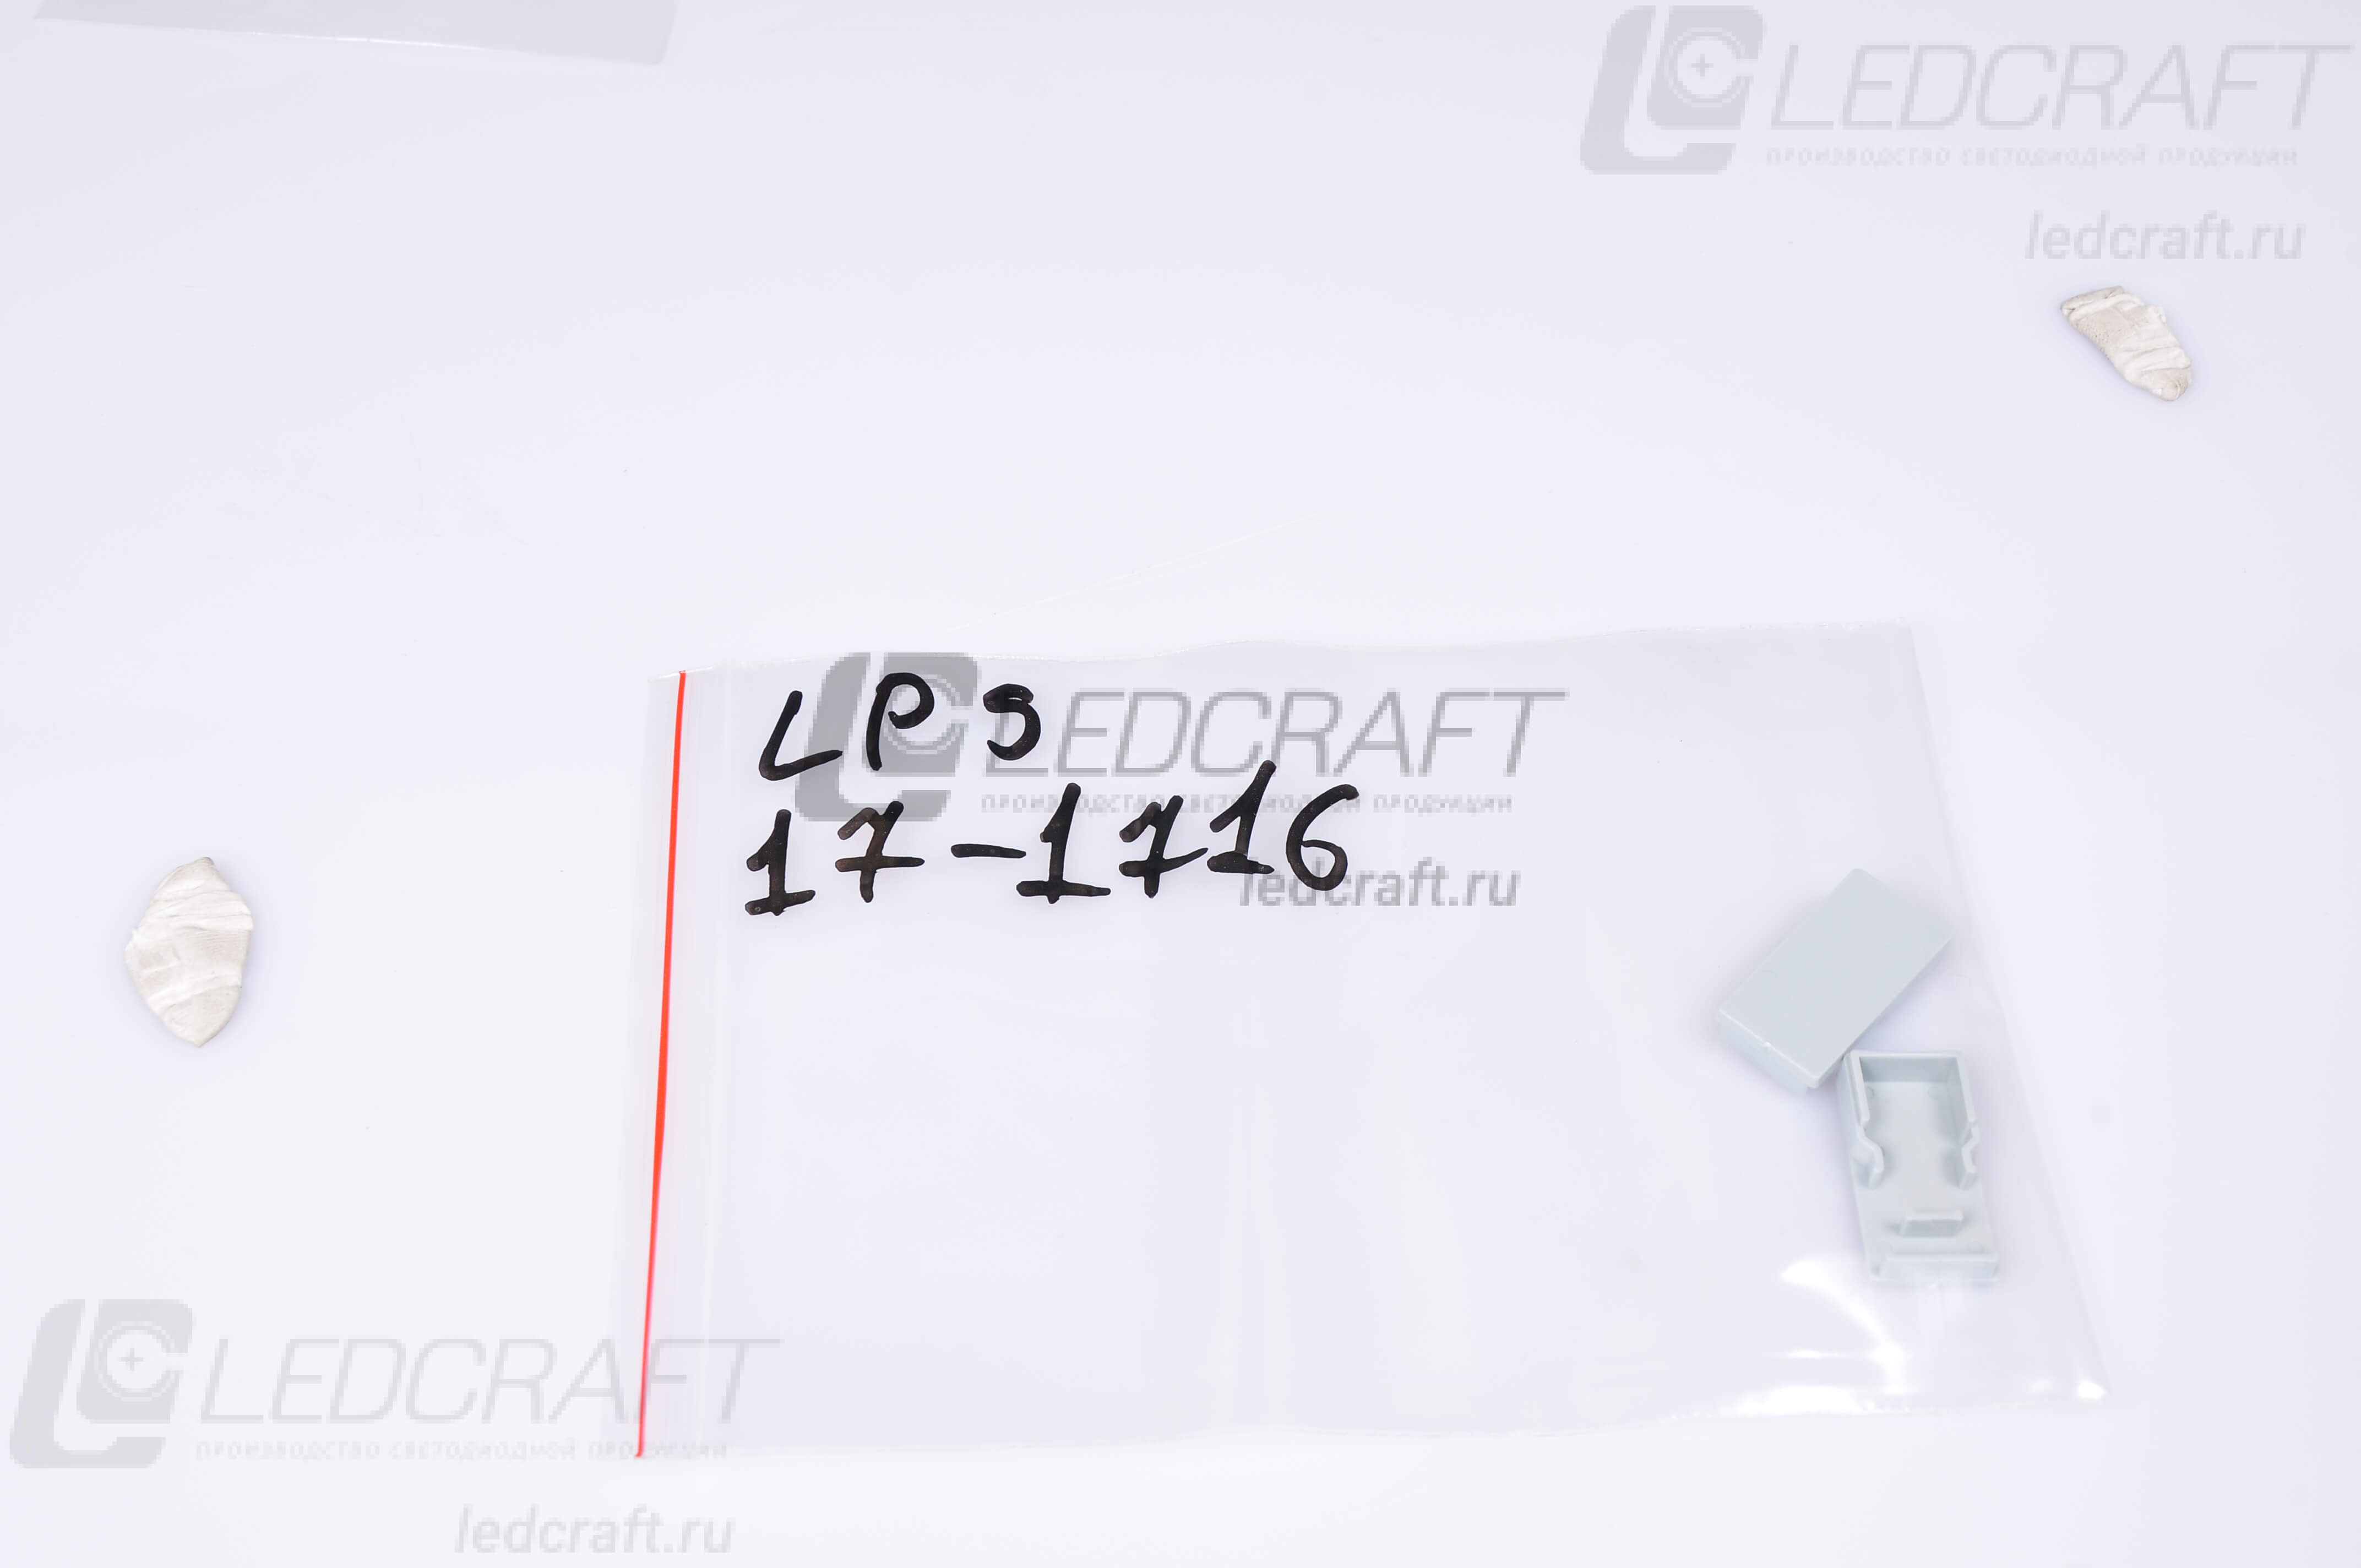 Заглушка для LC-LPS-17-1716 универсальная - фото 2